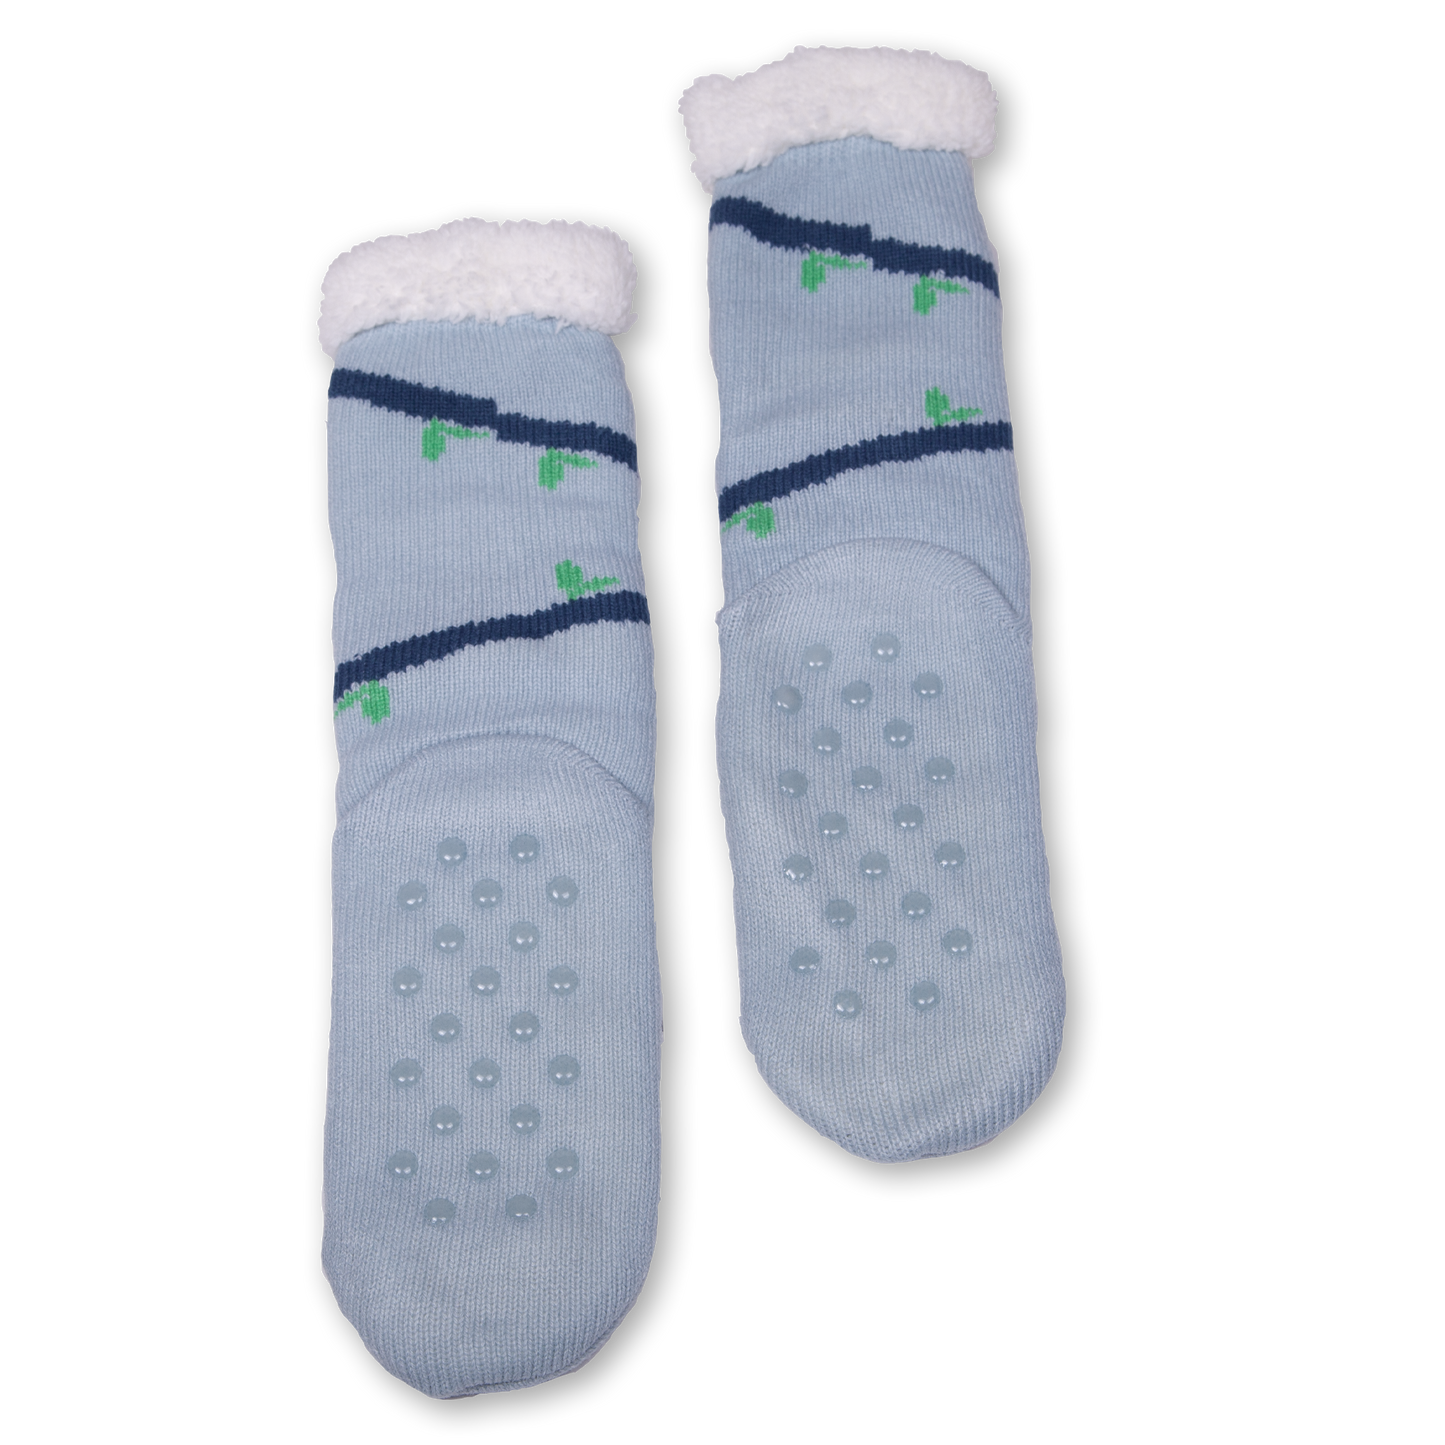 Adult's Koala Cozy Warmer Slipper Socks with Sherpa Lining